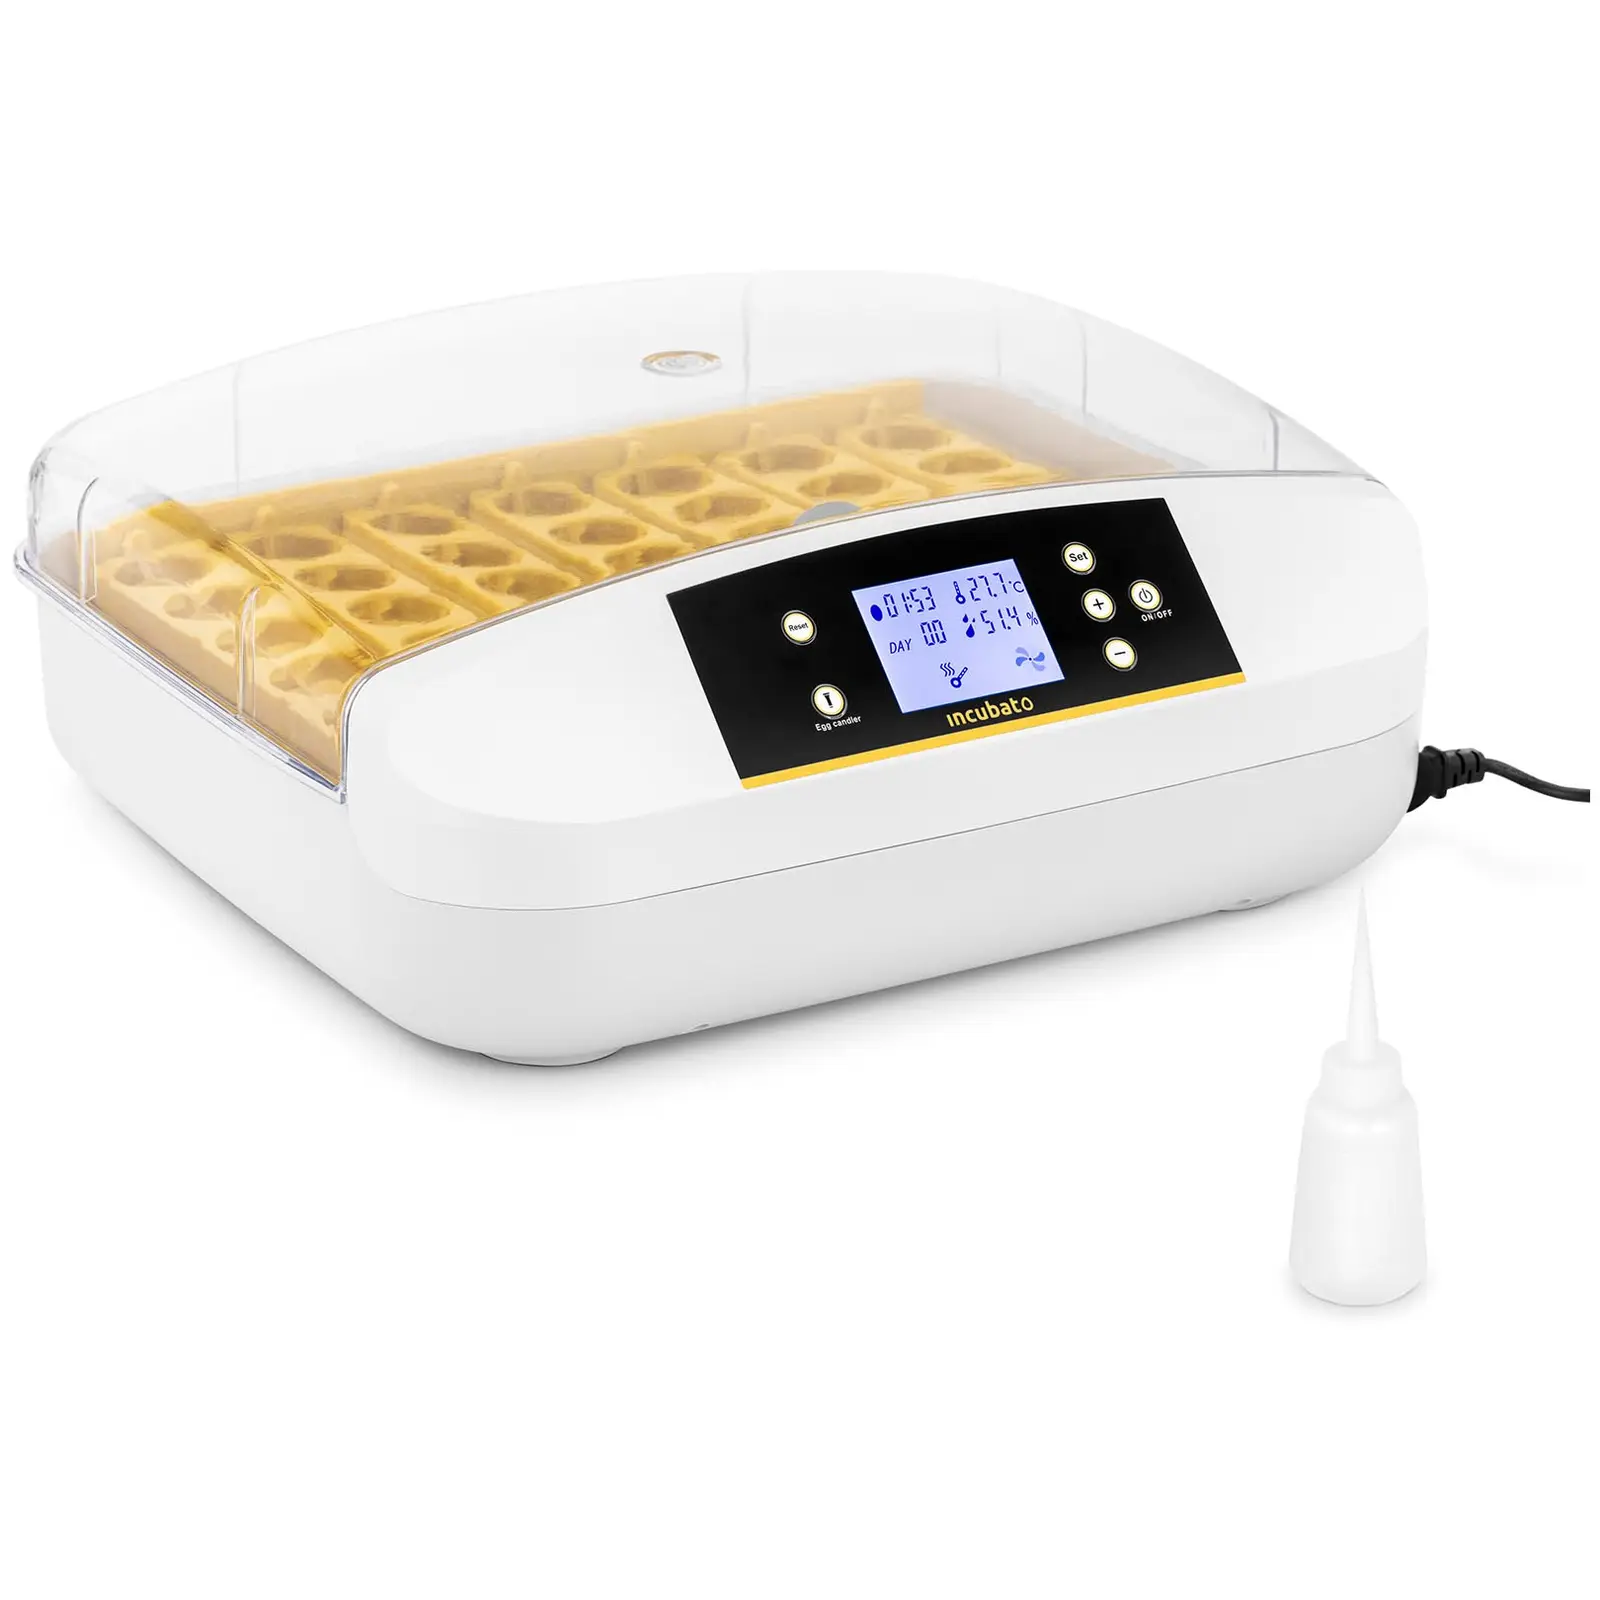 Inkubatorius - 42 kiaušiniai - įmontuota apsauginė lempa - visiškai automatinis